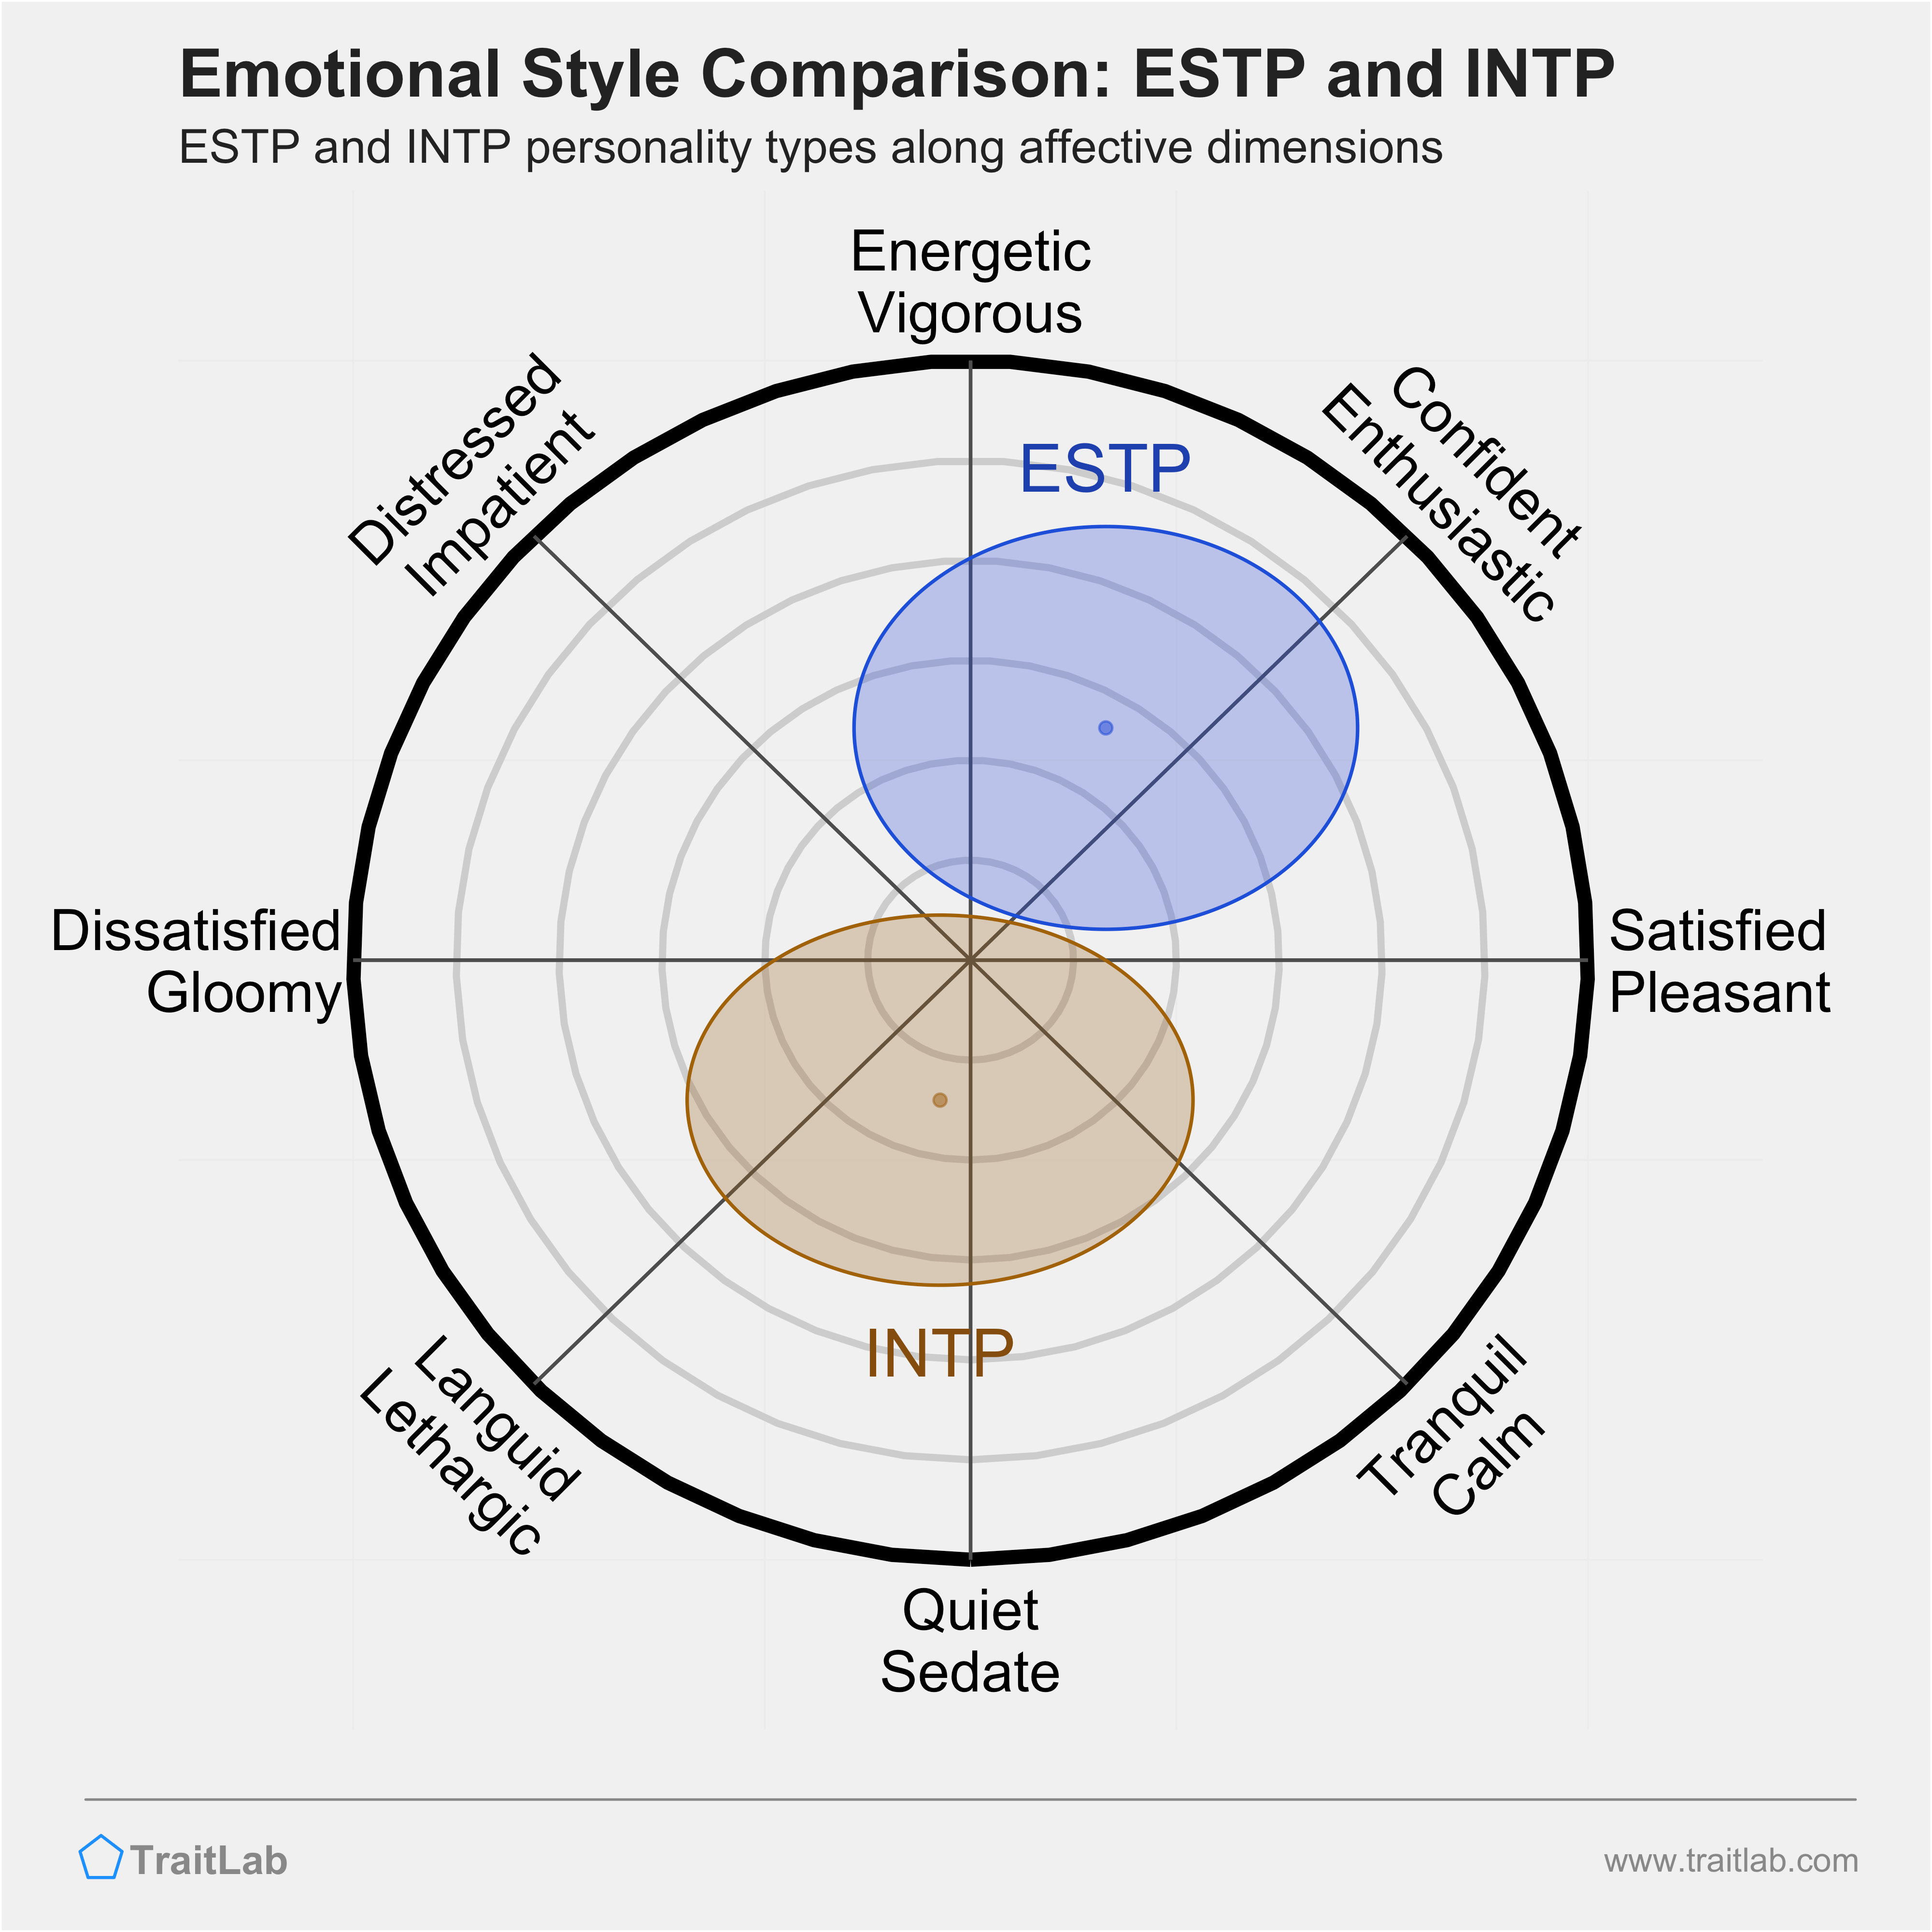 ESTP and INTP comparison across emotional (affective) dimensions